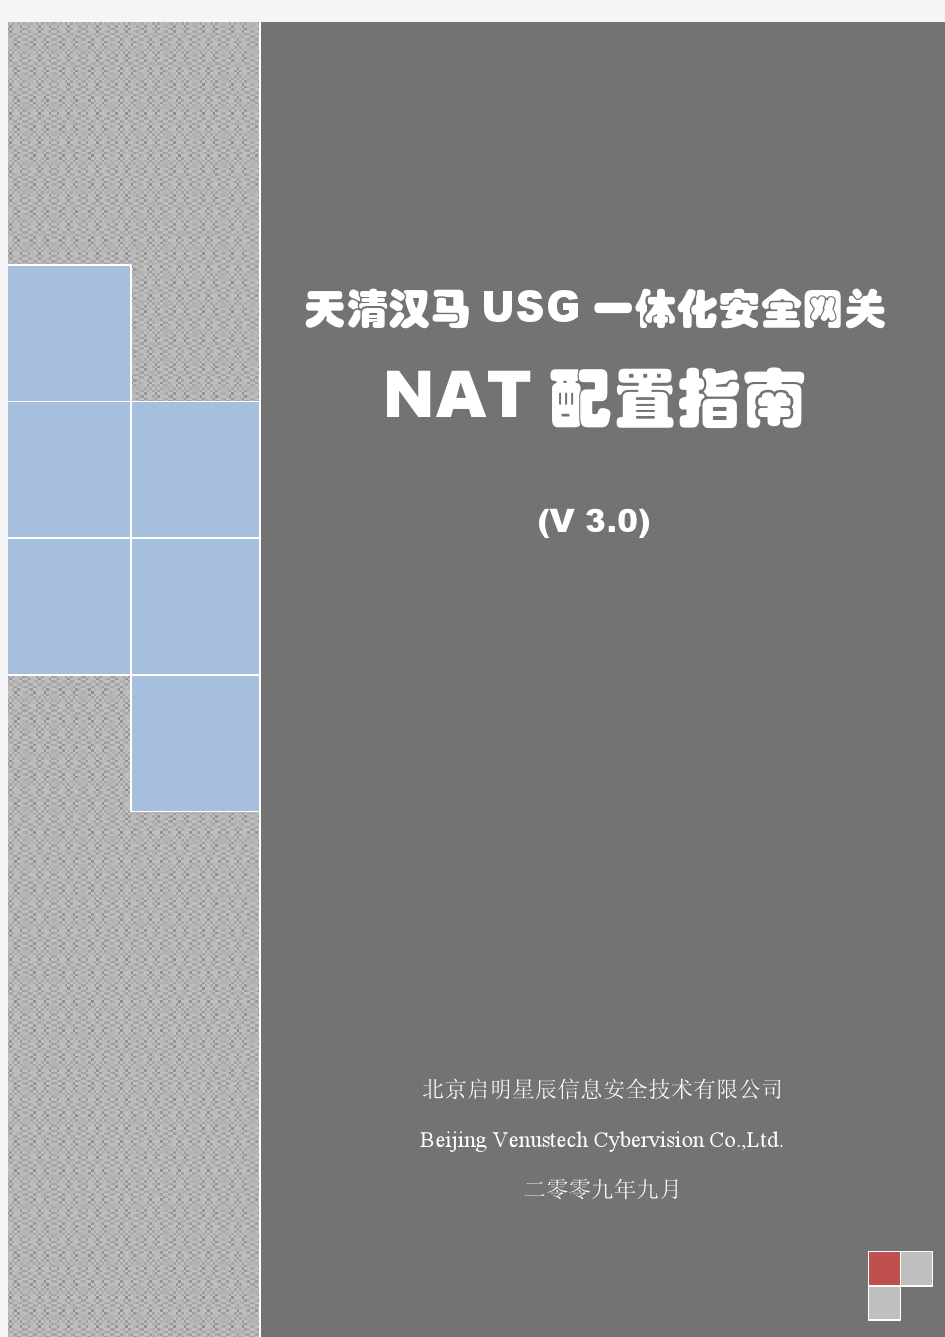 20090905_天清汉马USG系列_NAT配置指南_V3.0